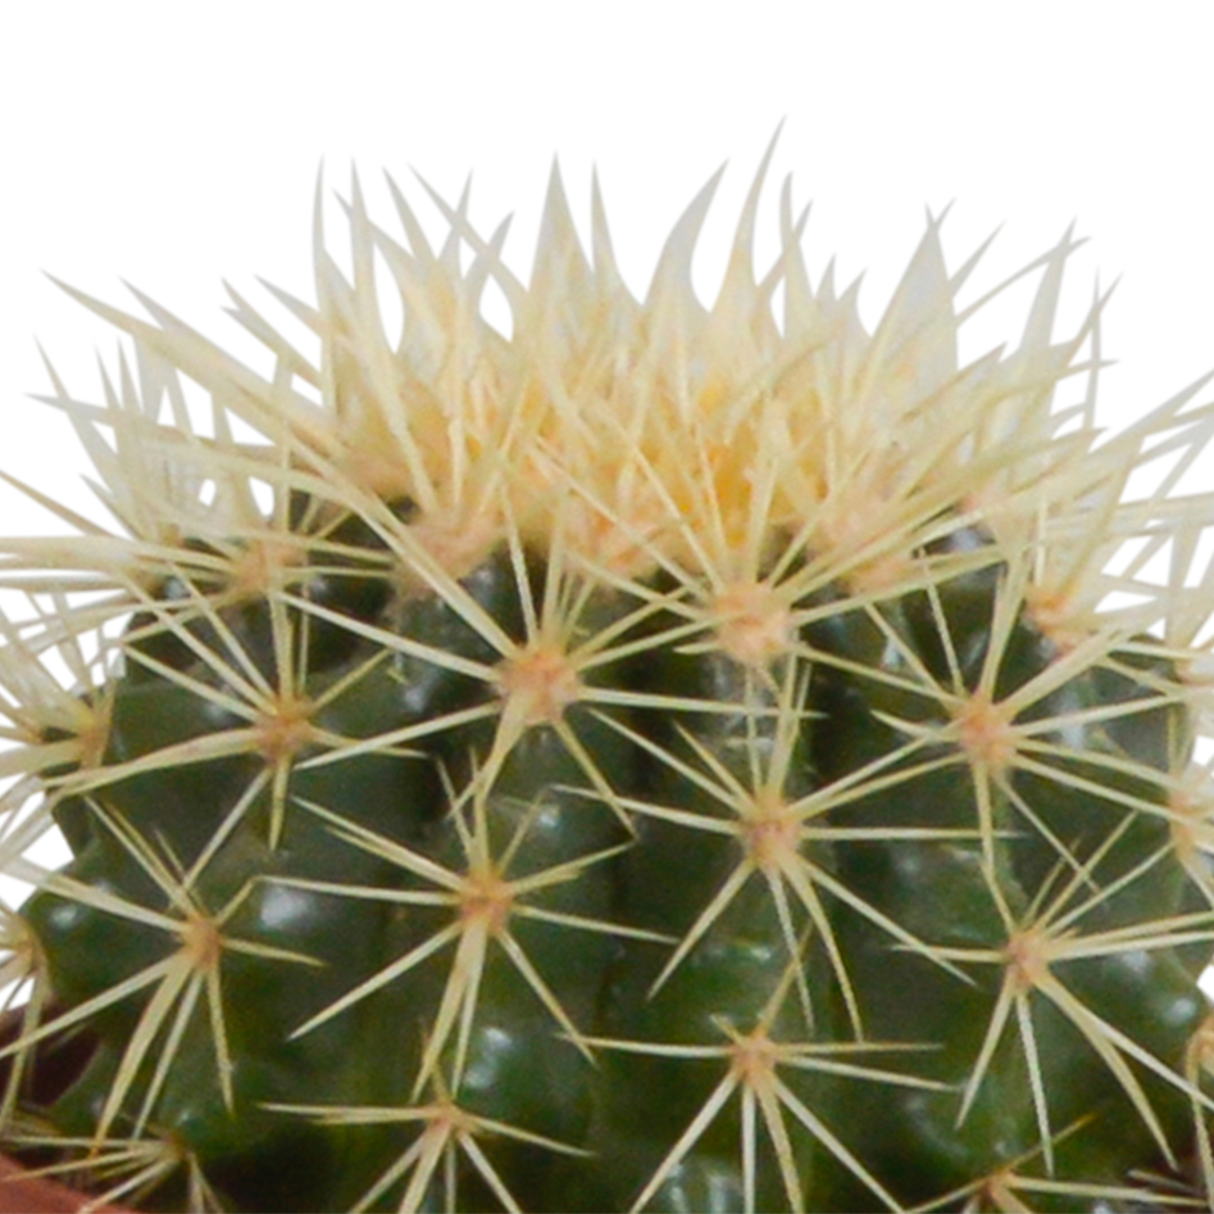 Caja de cactus y sus maceteros de terracota - Juego de 3 plantas, h23cm